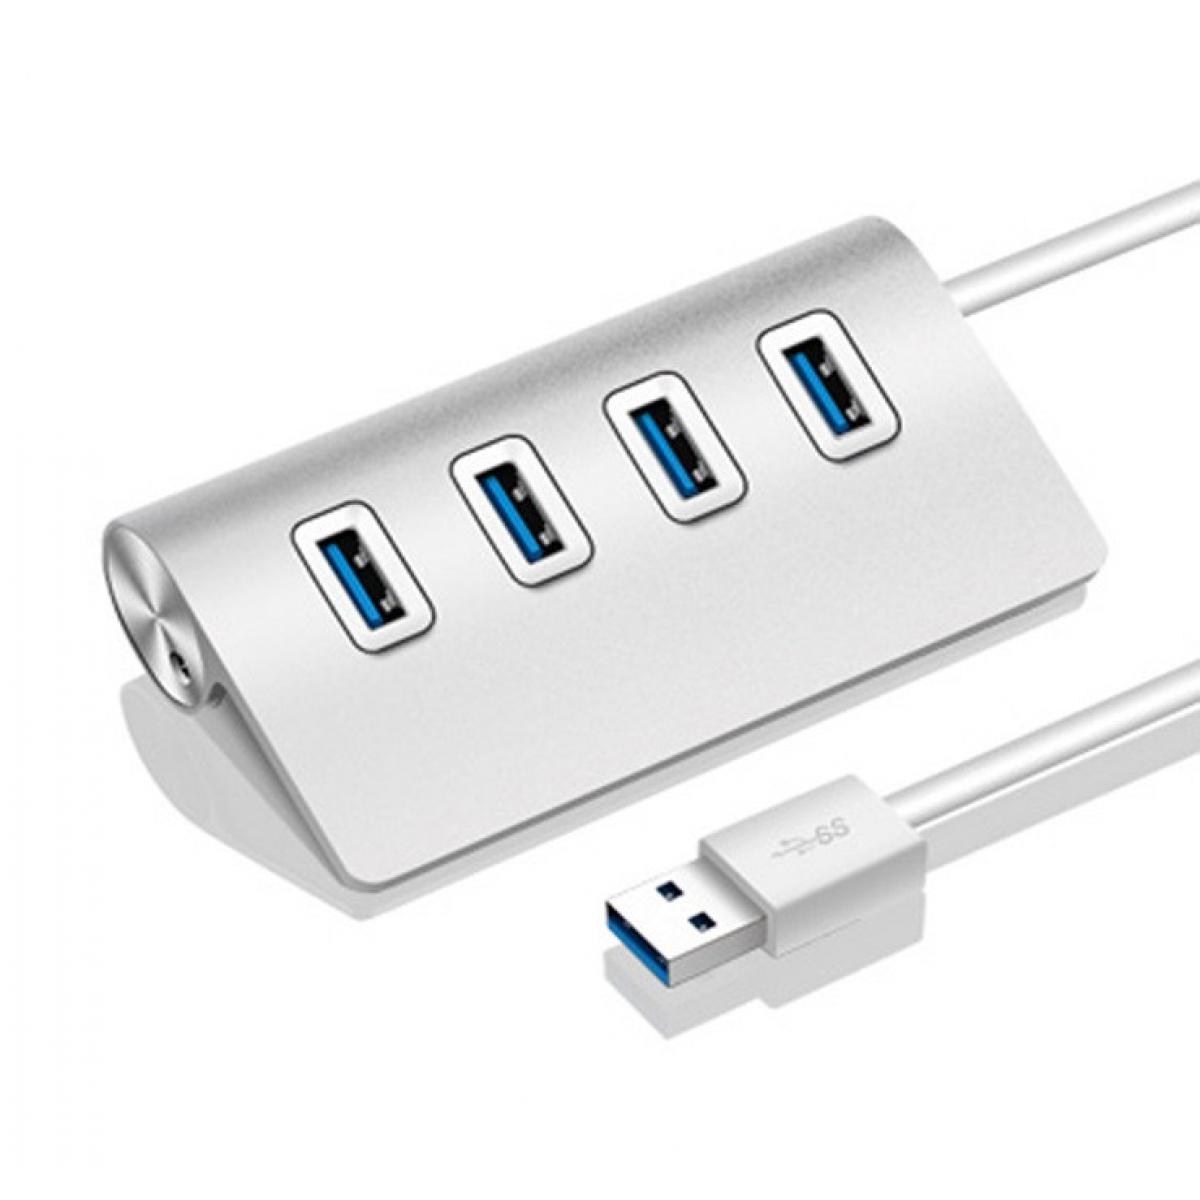 Shot - Hub Metal 4 ports USB 2.0 pour PC MAC Mini APPLE Multi-prises Adaptateur Rallonge (ARGENT) - Hub